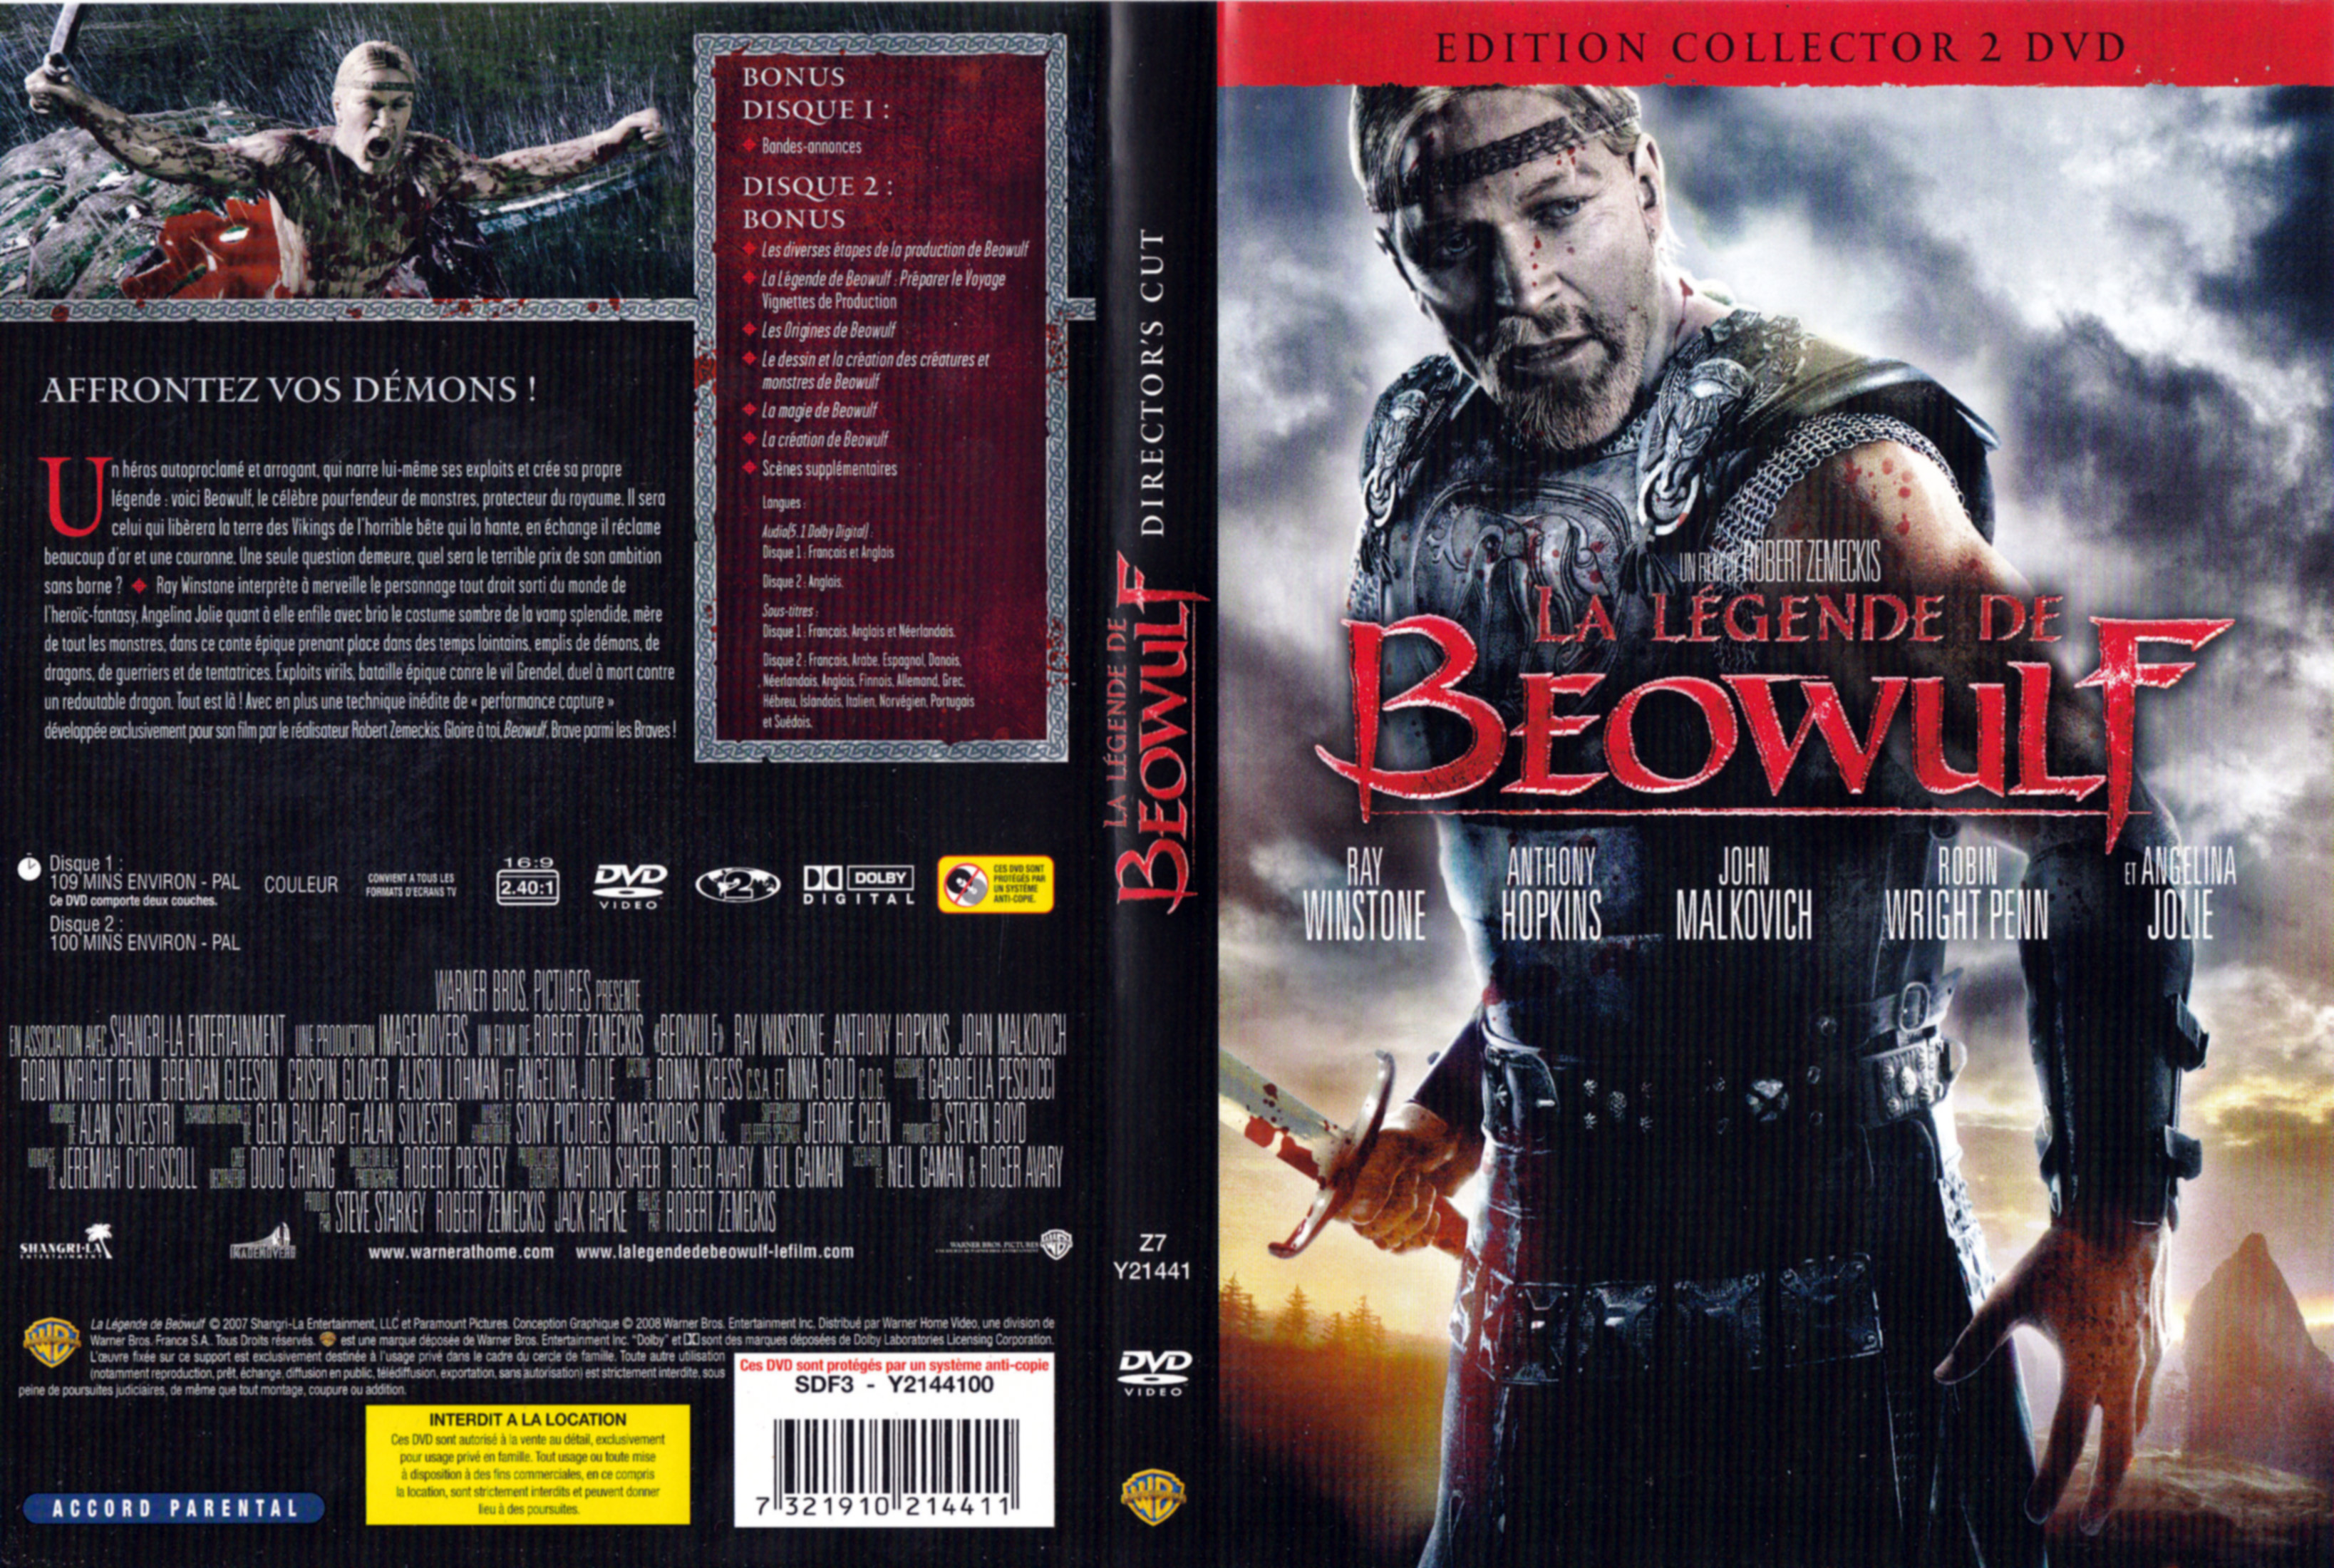 Jaquette DVD La lgende de Beowulf v3